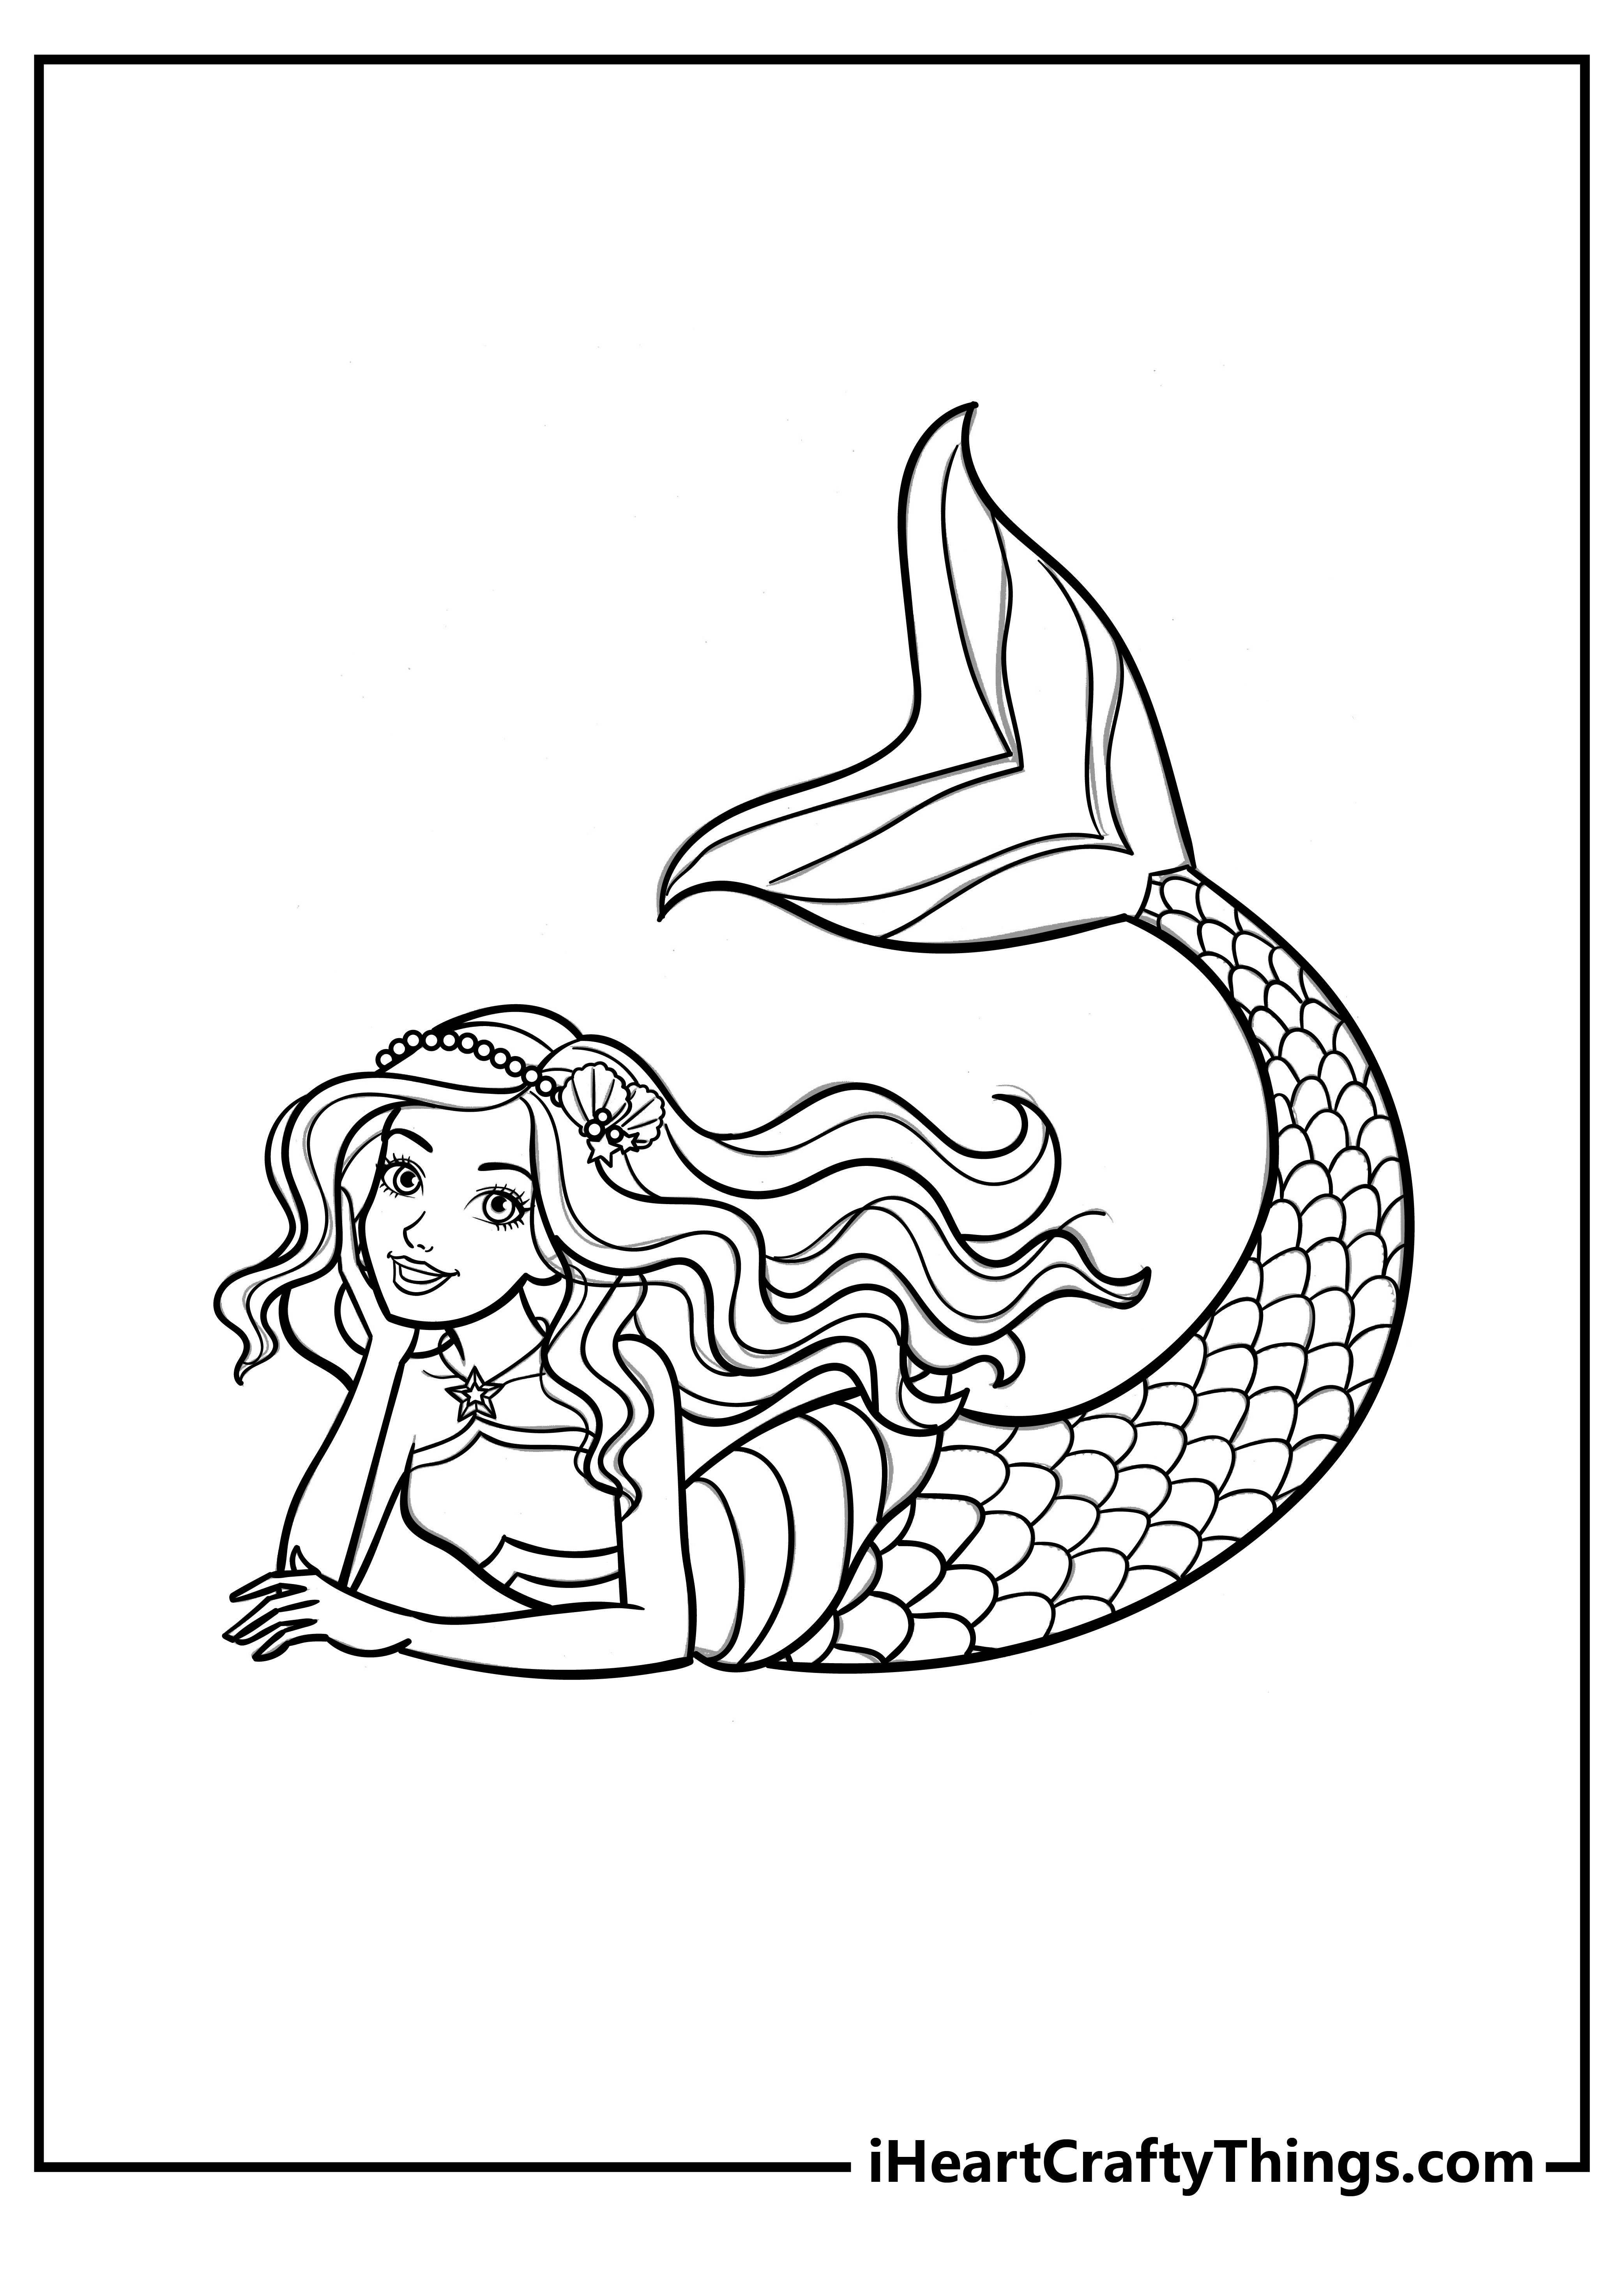 Printable Barbie Mermaid Coloring Pages Updated 21